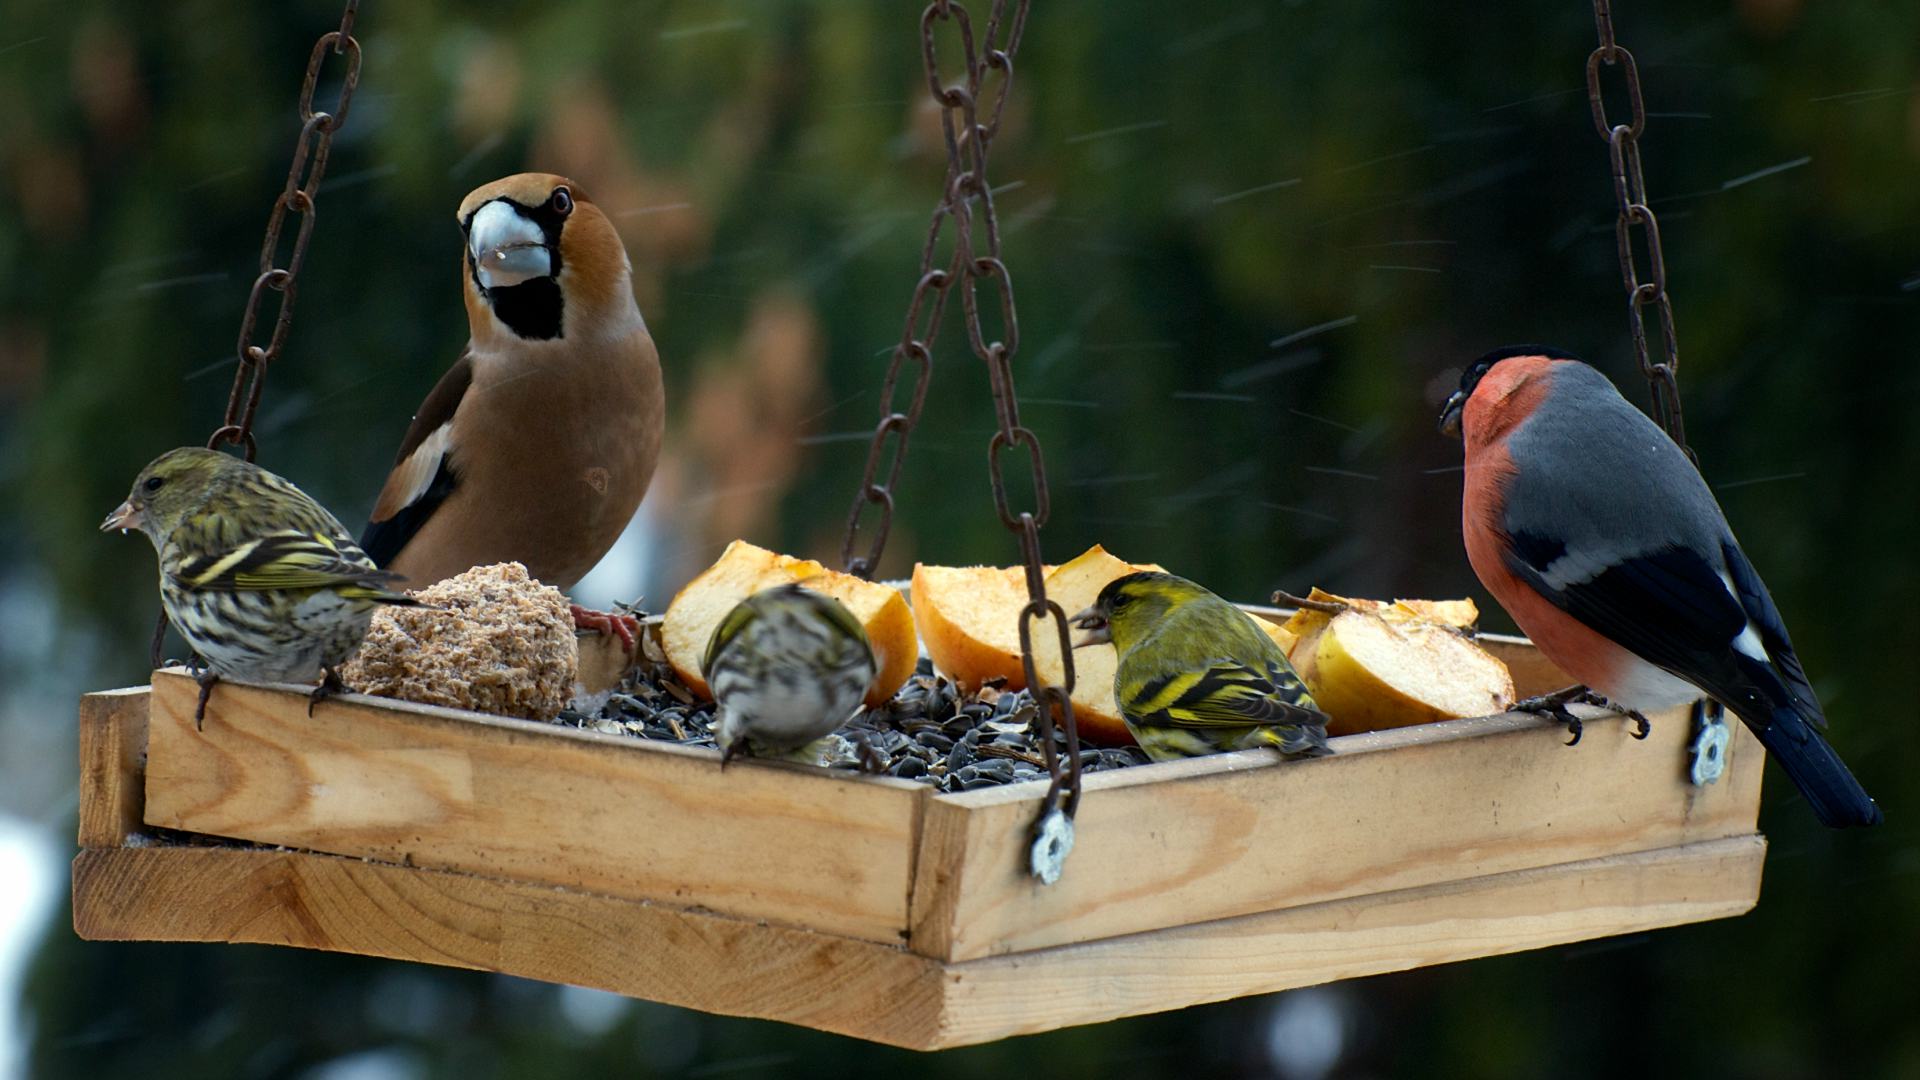 vogels eten voer